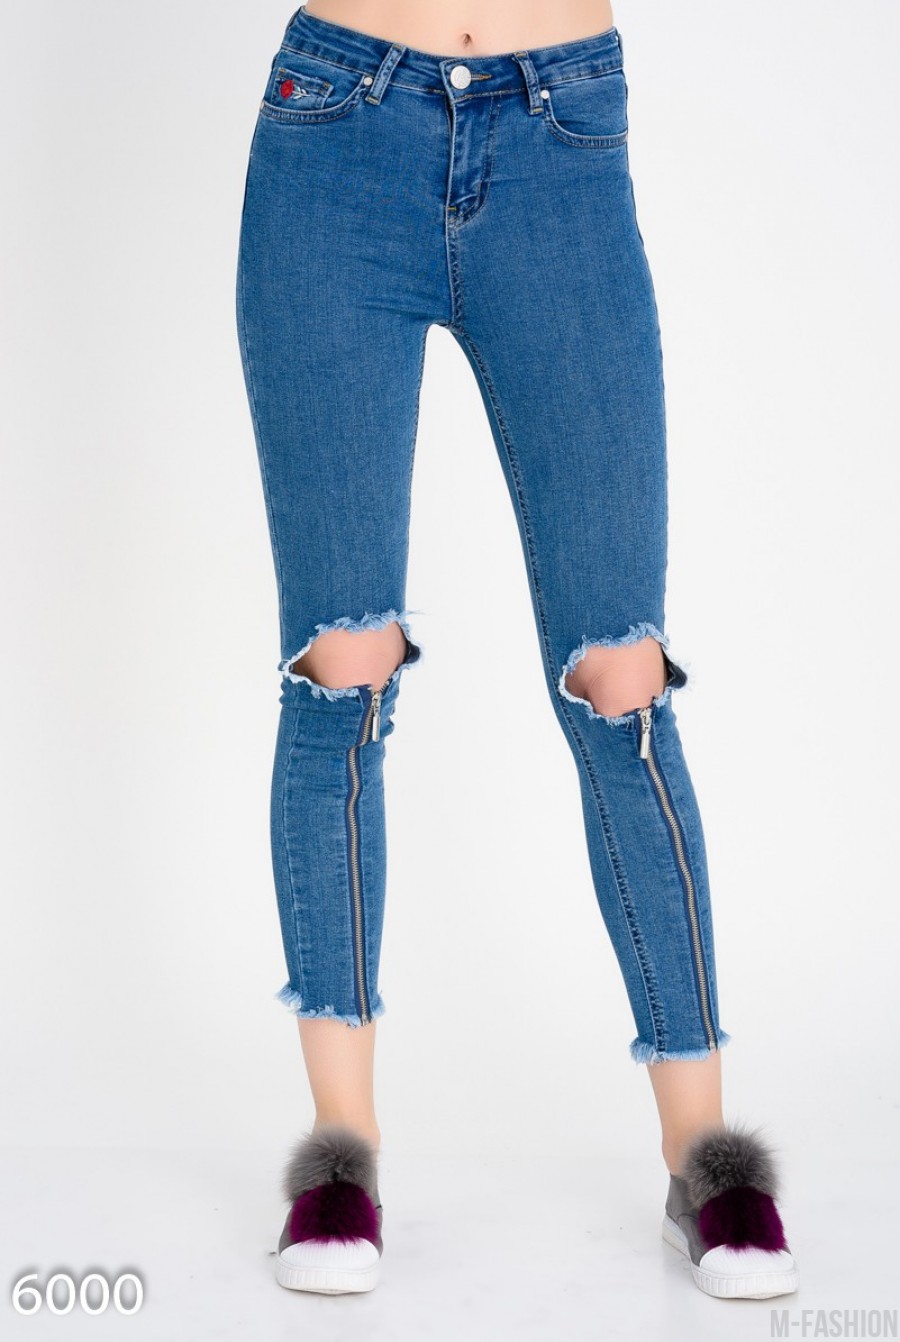 Короткие узкие джинсы с крупными дырками на коленях - Фото 1